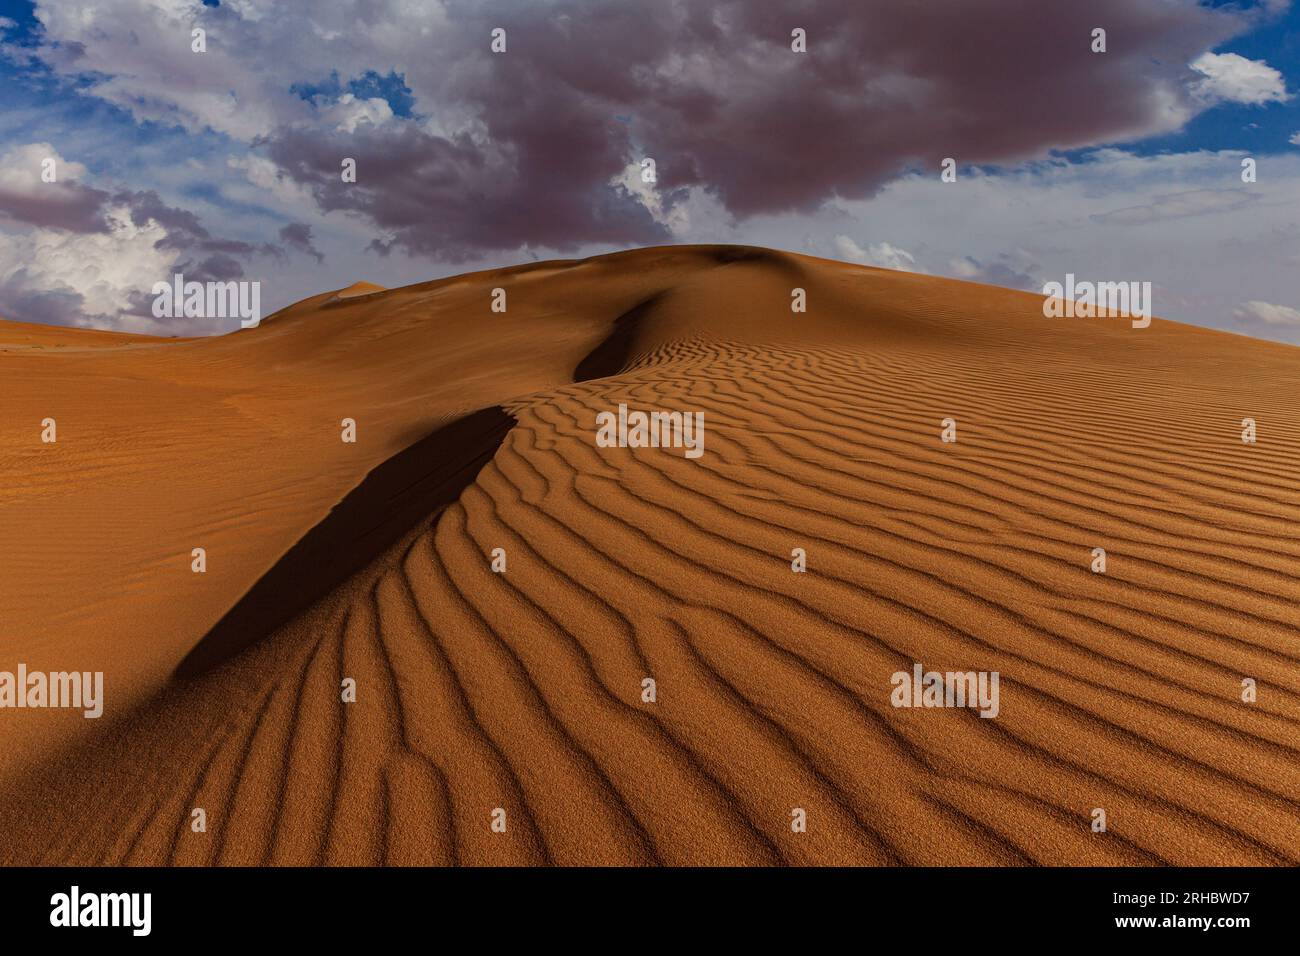 Ondulations sur la crête d'une dune de sable dans un paysage désertique, Arabie Saoudite Banque D'Images